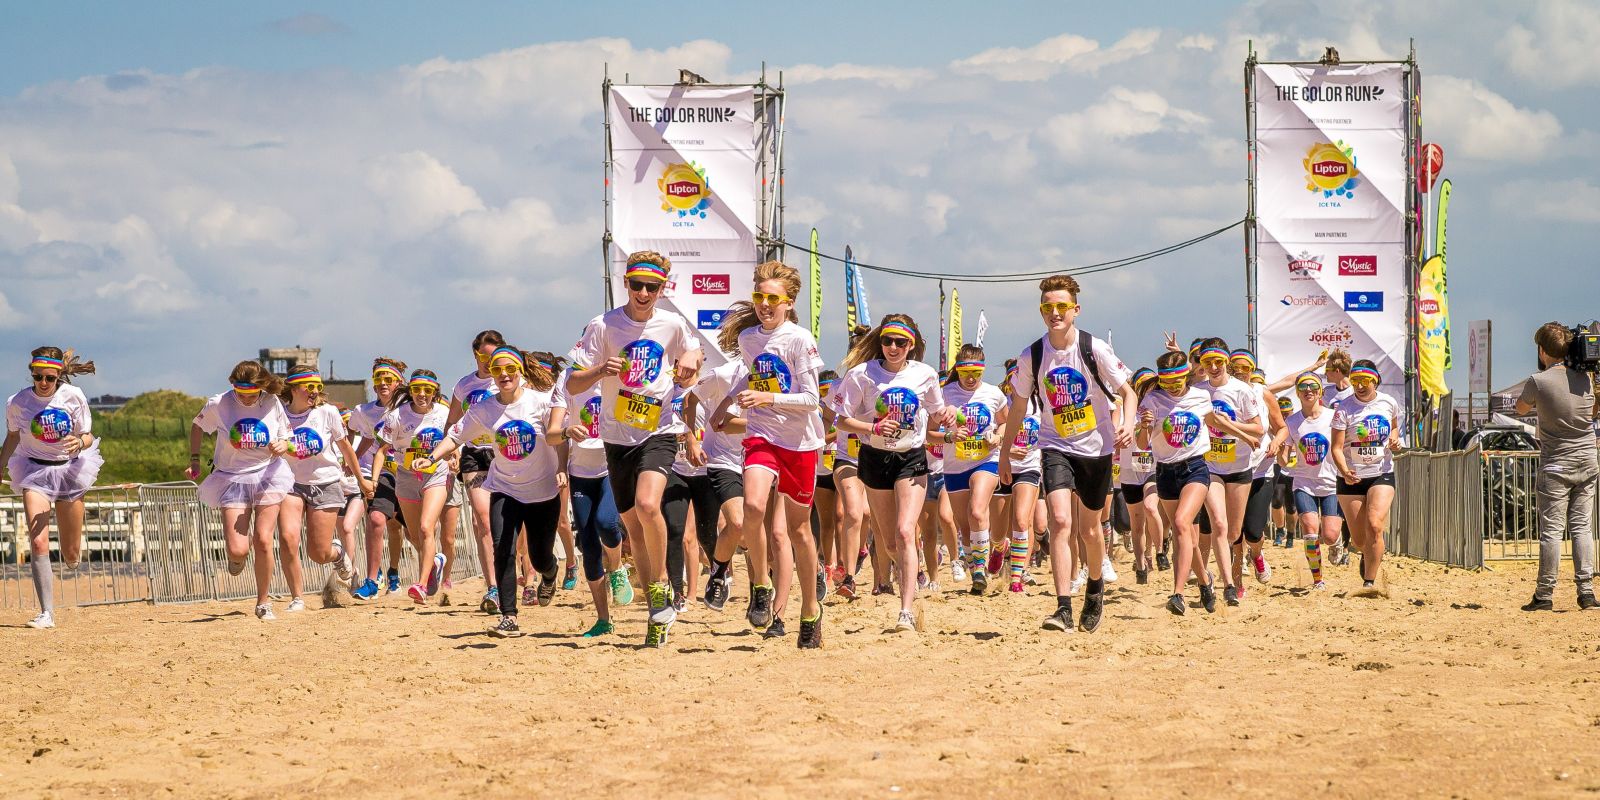 jeunes adolescents qui courent lors d'un évènement sportif